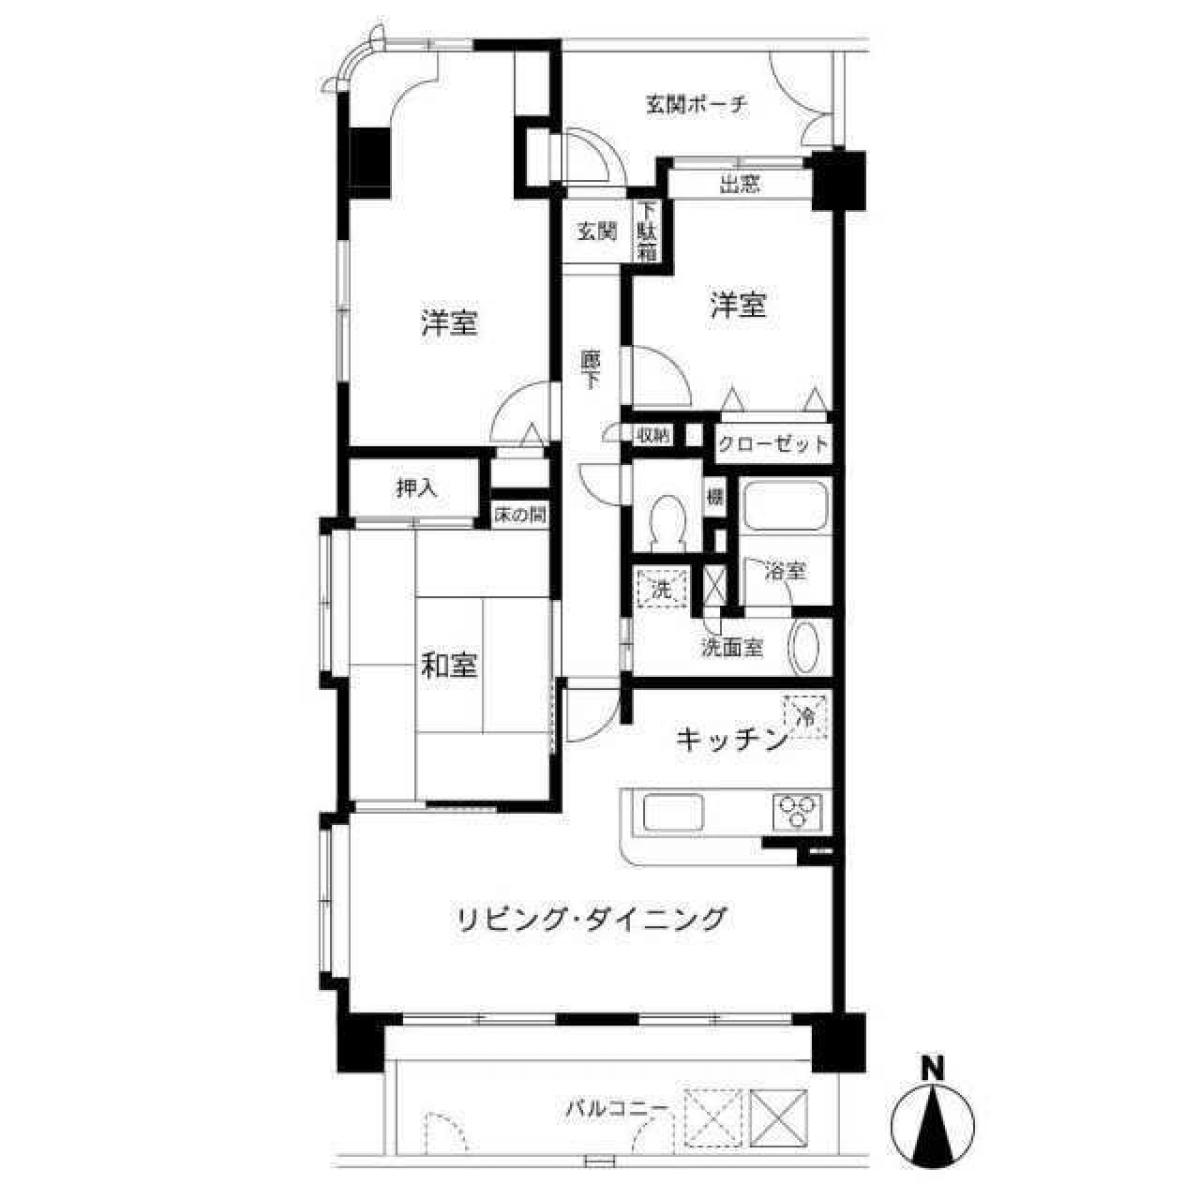 Picture of Apartment For Sale in Fukuoka Shi Minami Ku, Fukuoka, Japan